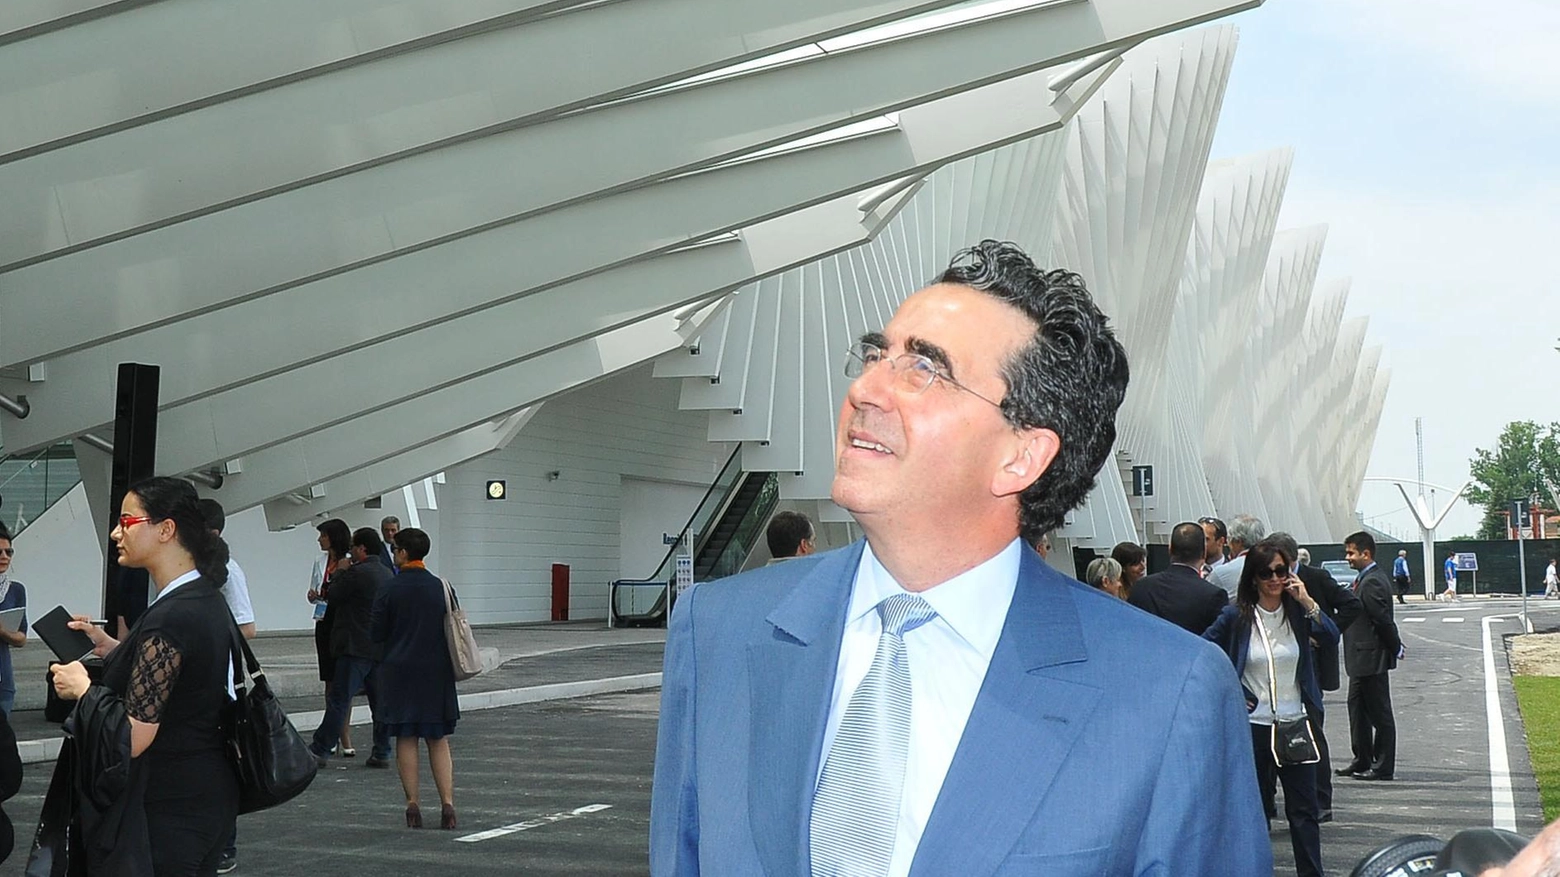 Dieci anni di Calatrava  Severi sente l’archistar  nell’anniversario  "La stazione? Miracolo"